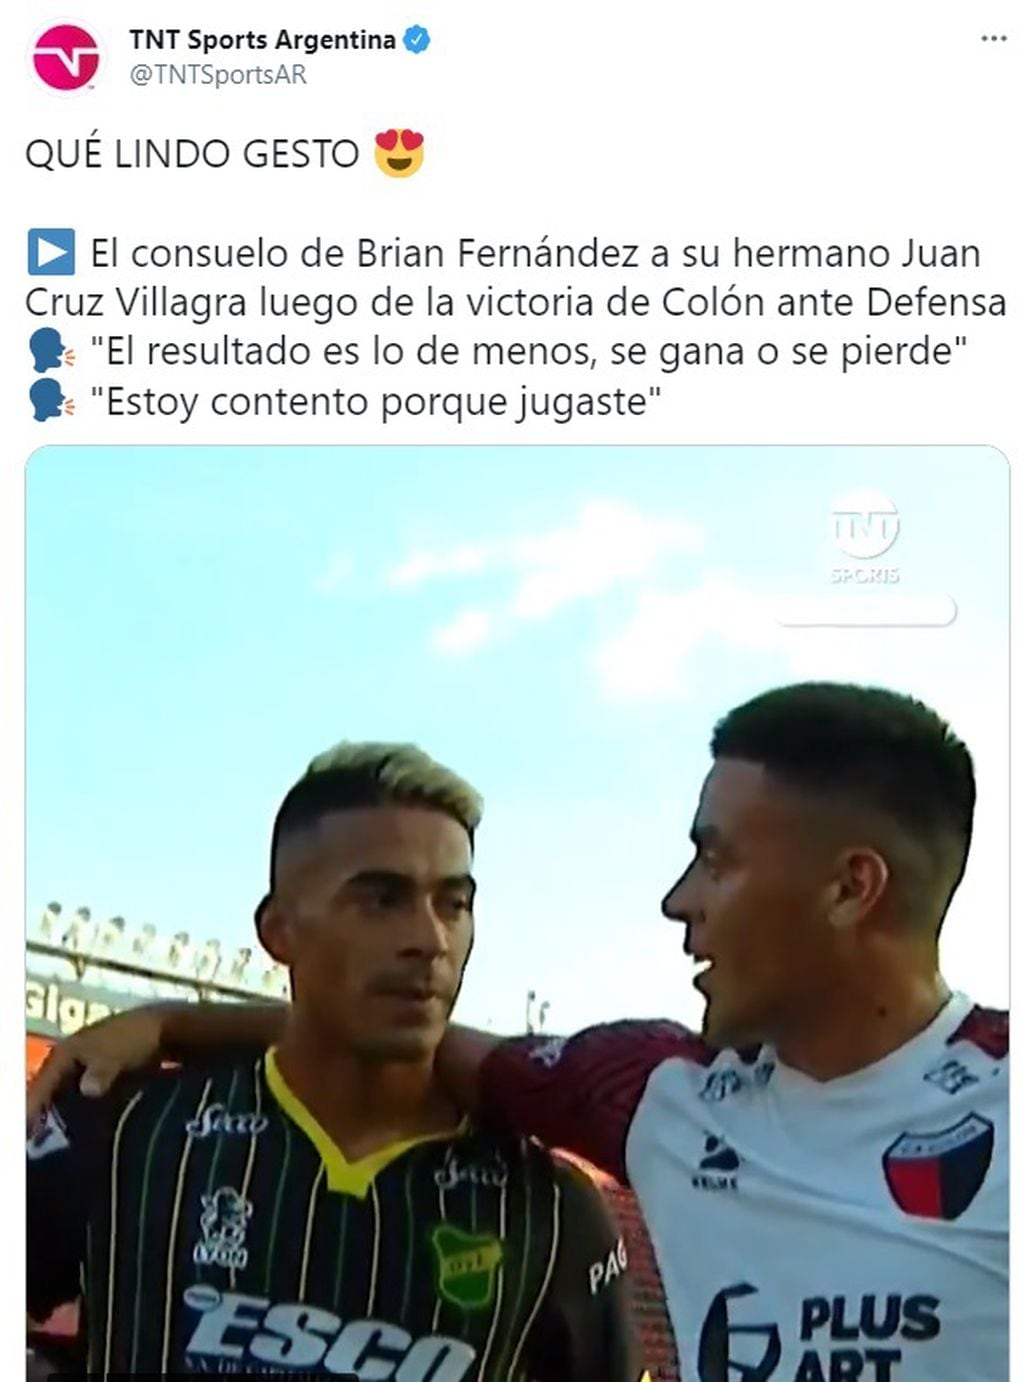 Los hermanos, Brian Fernández y Juan Cruz Villagra, ya se habían enfrentado en un campo de juego en el 2020. Luego del partido se abrazaron.